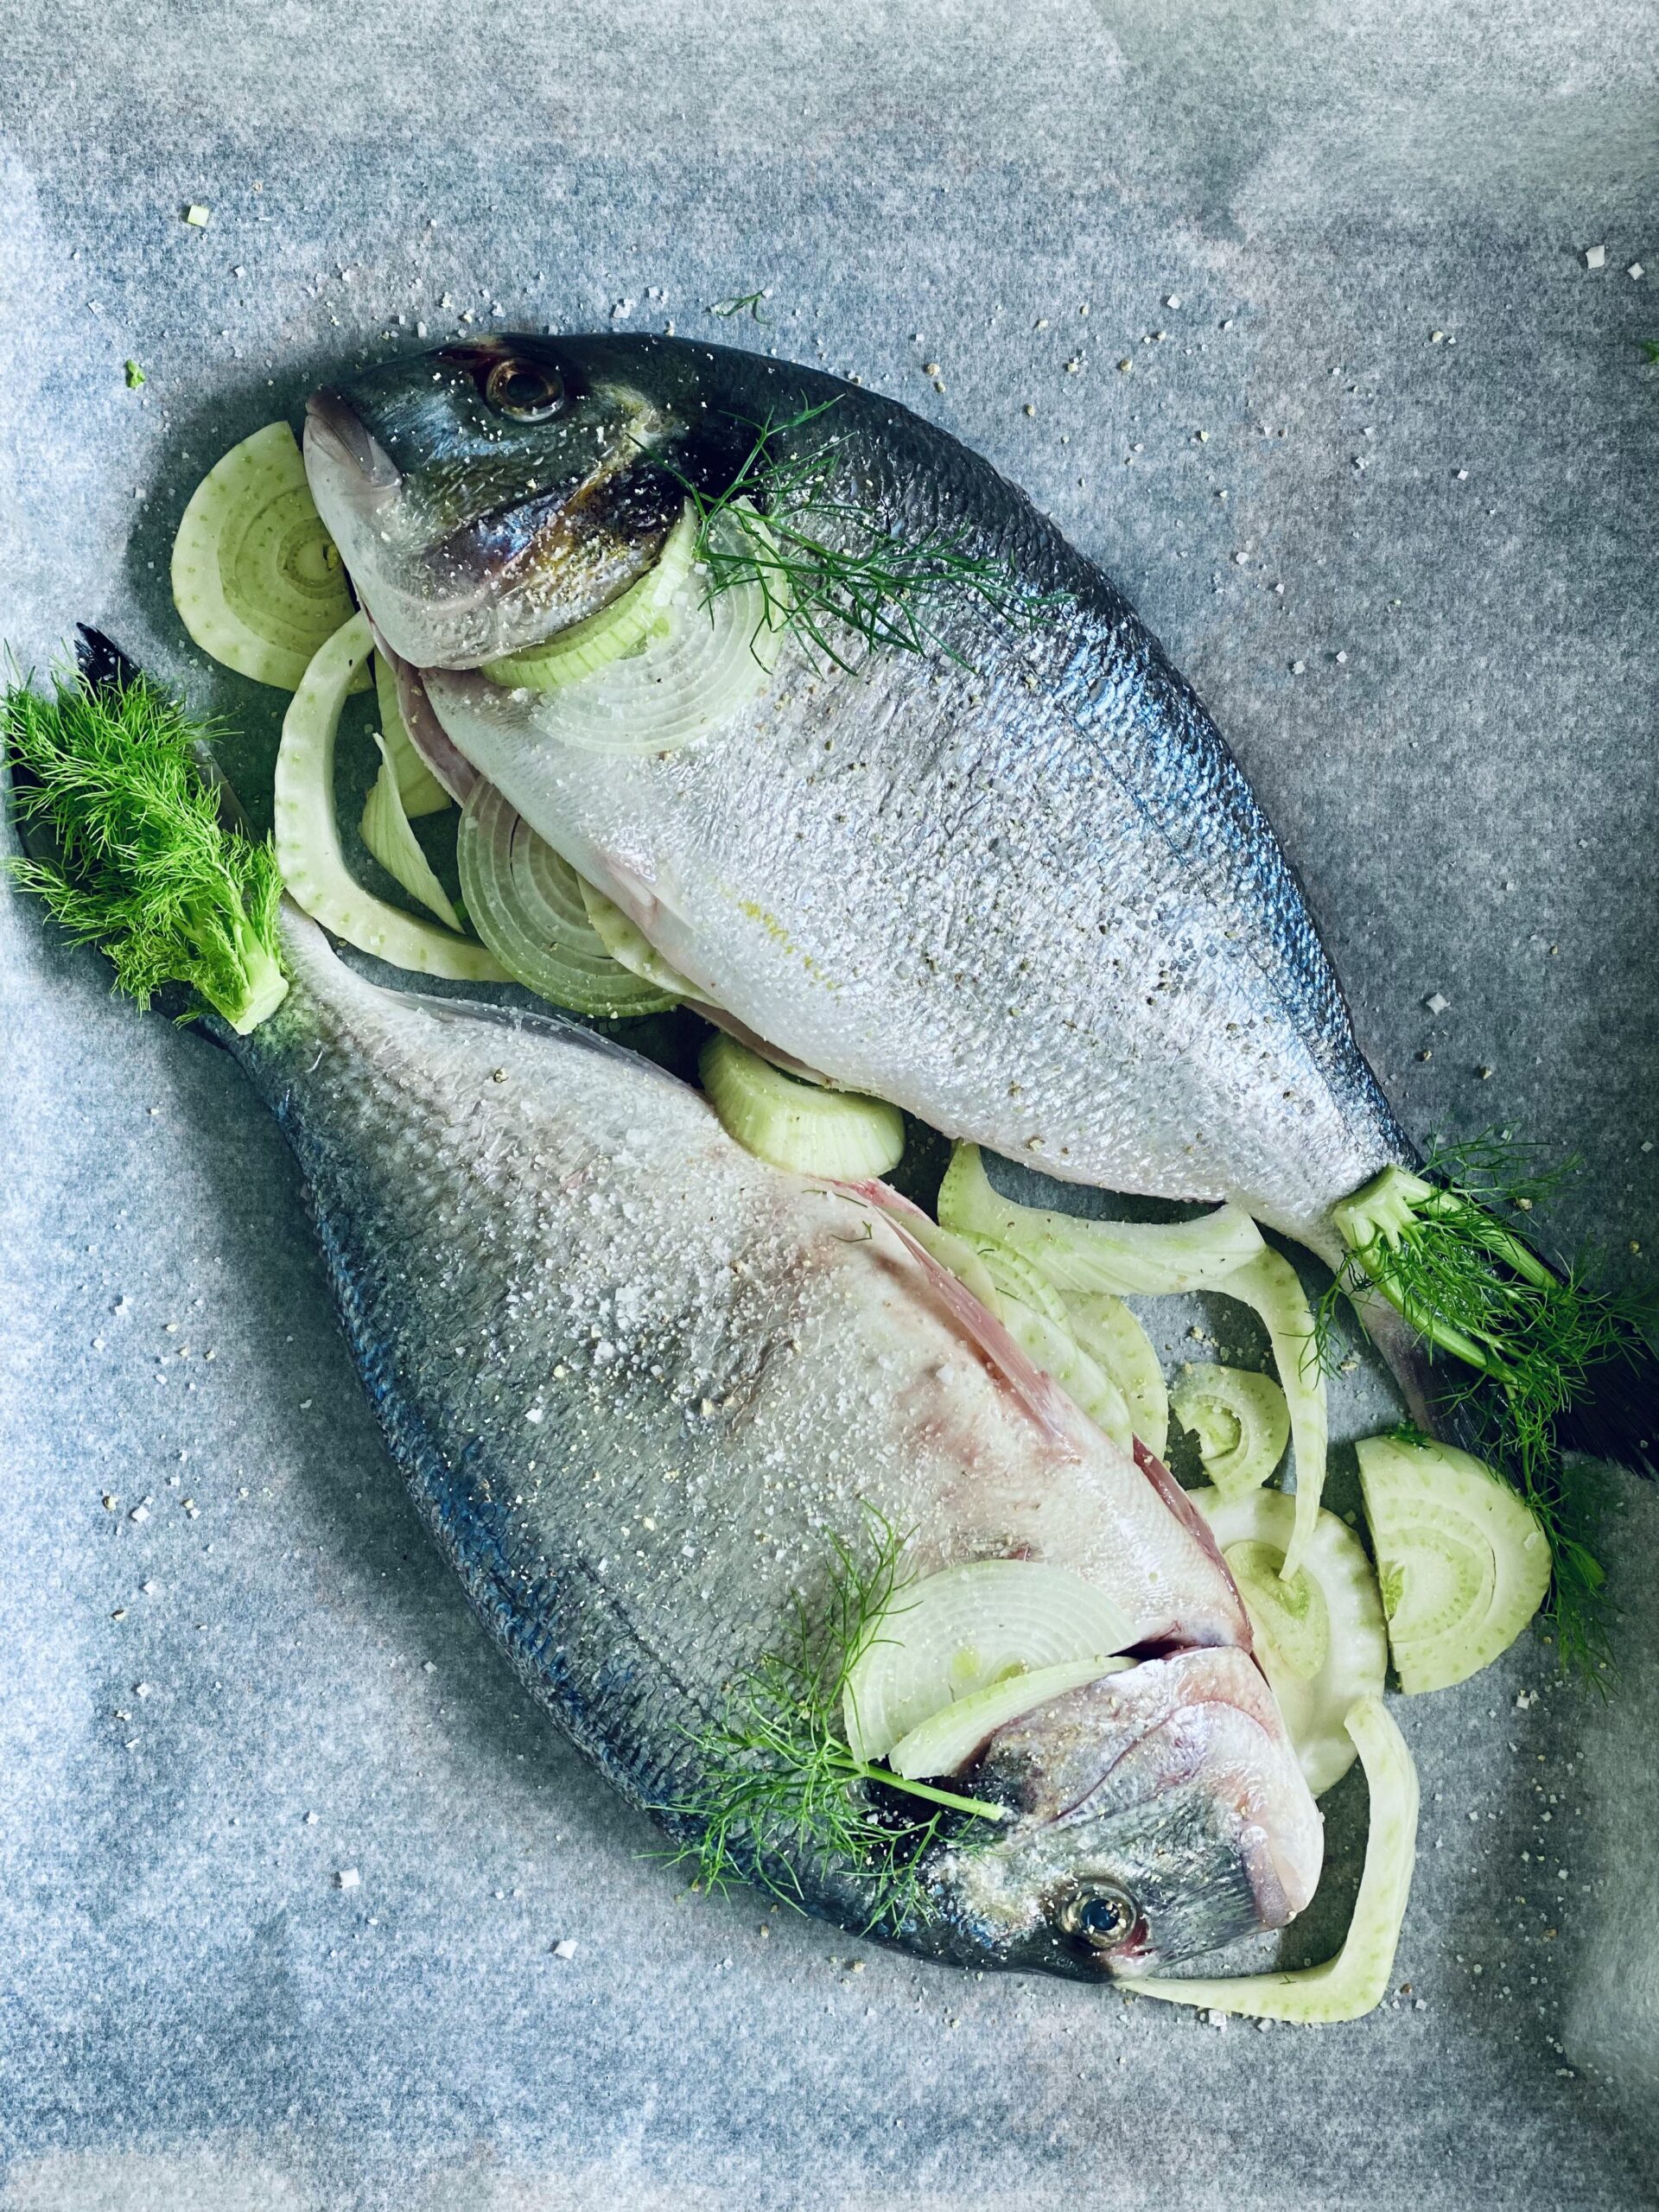 Рыба с овощами в духовке - рецепты с фото. Как запечь рыбу с овощами в духовке?